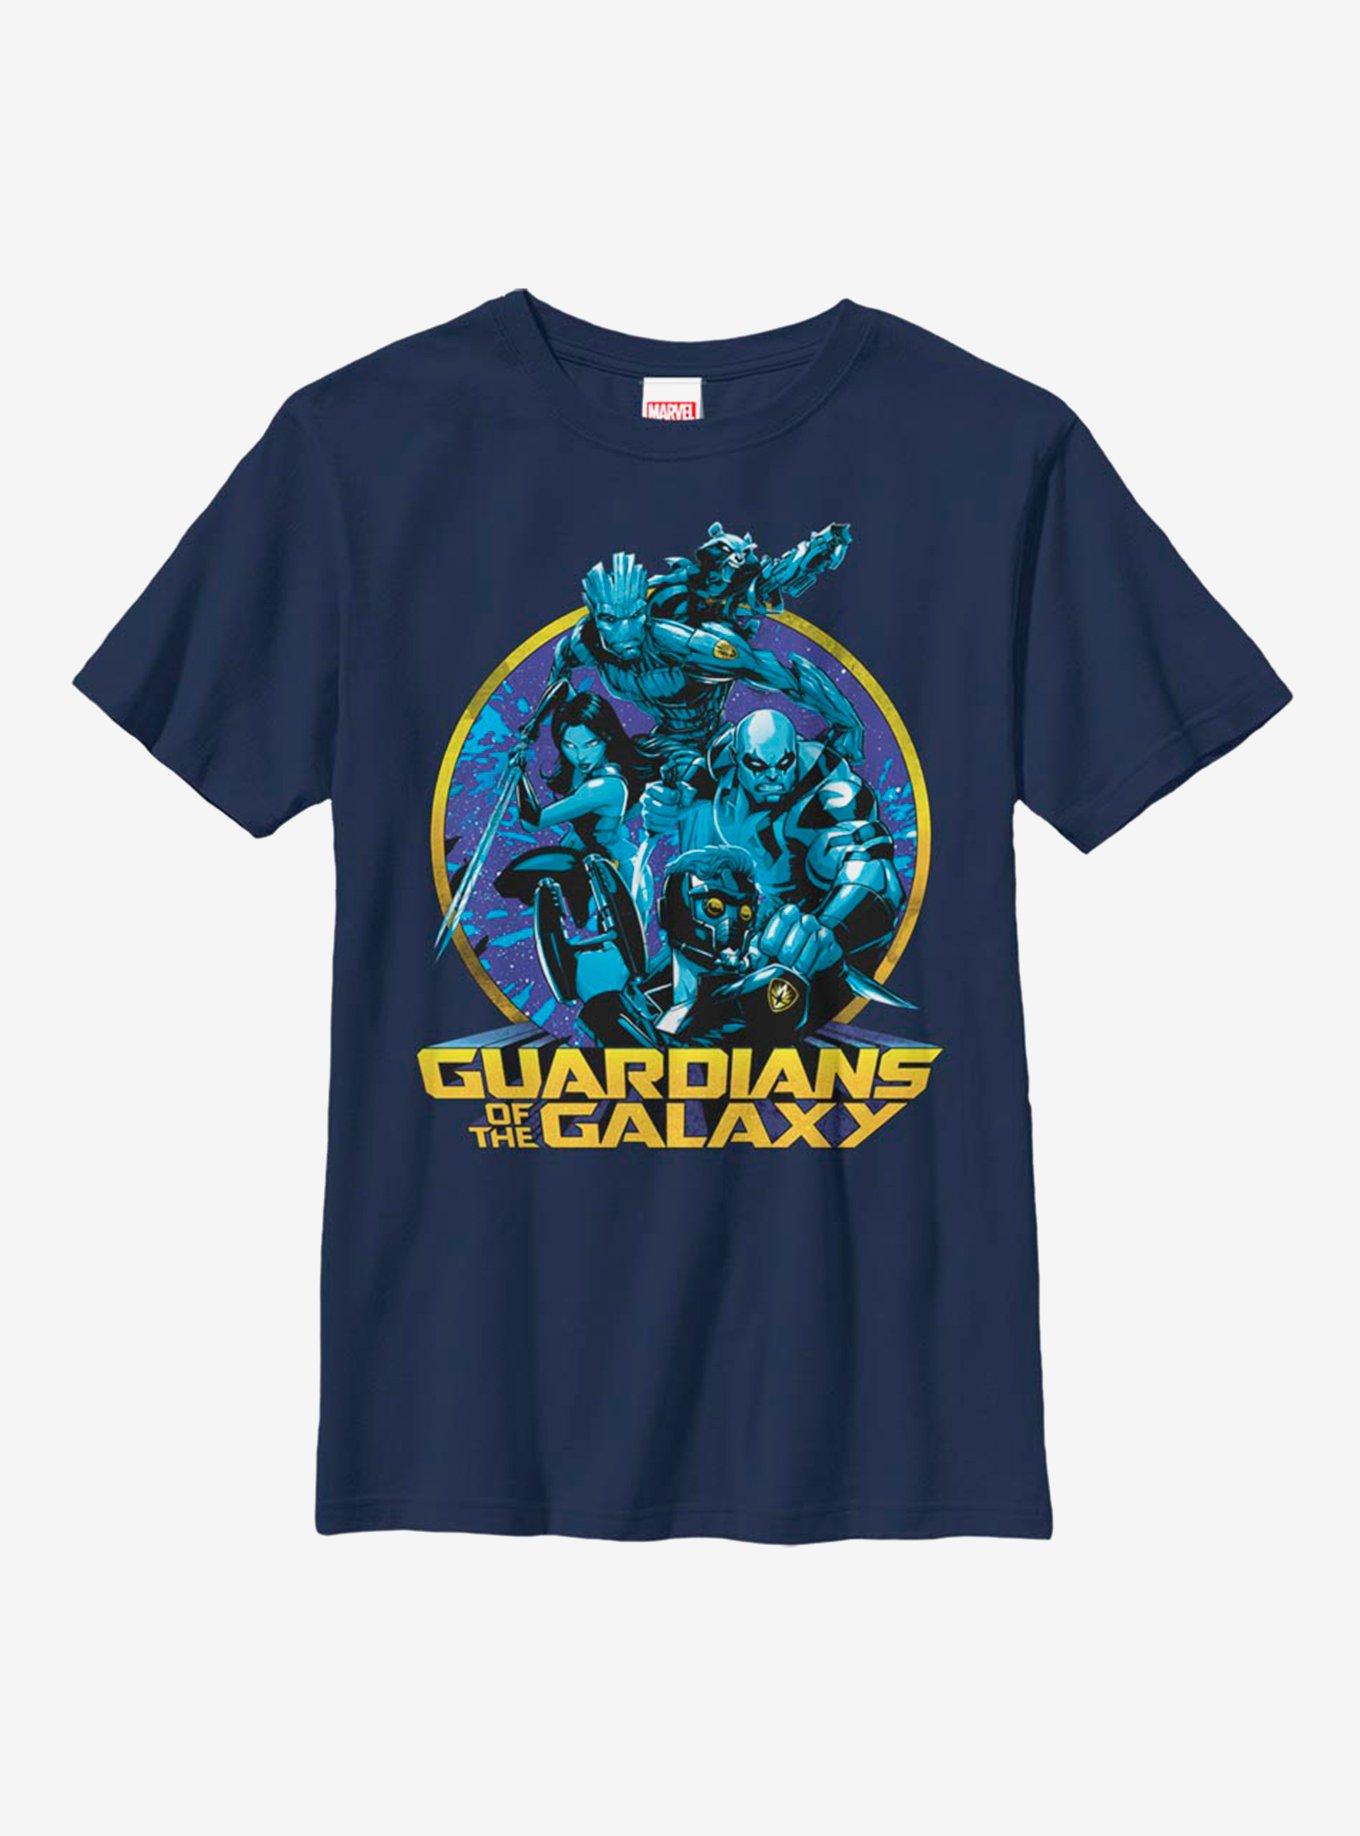 Marvel Guardians Of The Galaxy Galaxy Hues Youth T-Shirt, NAVY, hi-res